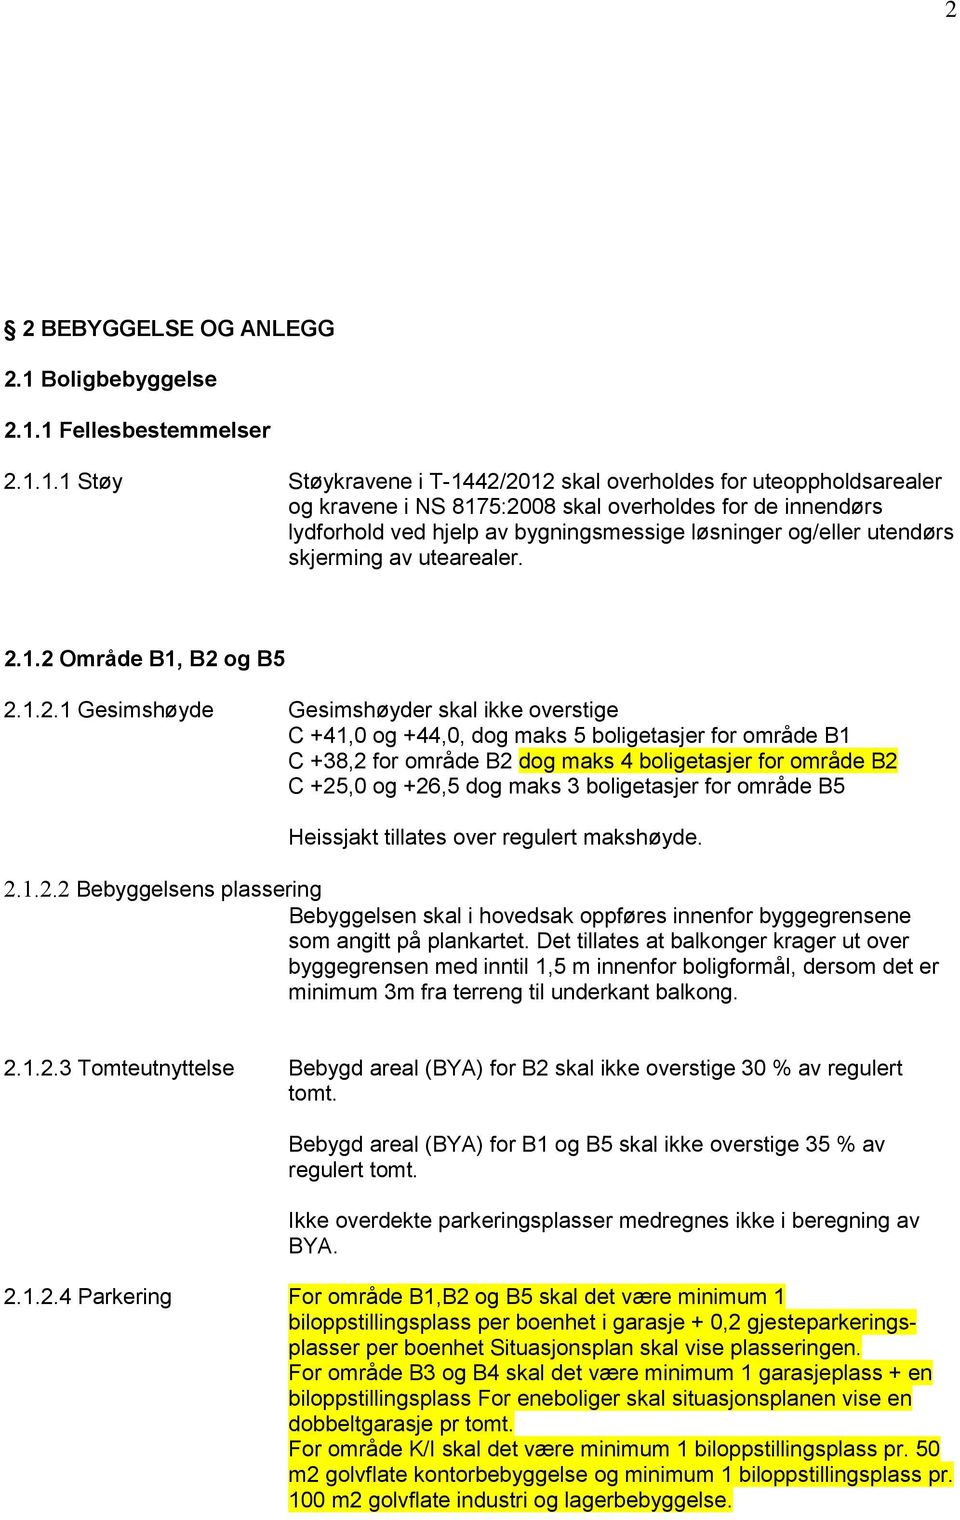 1 Fellesbestemmelser 2.1.1.1 Støy Støykravene i T-1442/2012 skal overholdes for uteoppholdsarealer og kravene i NS 8175:2008 skal overholdes for de innendørs lydforhold ved hjelp av bygningsmessige